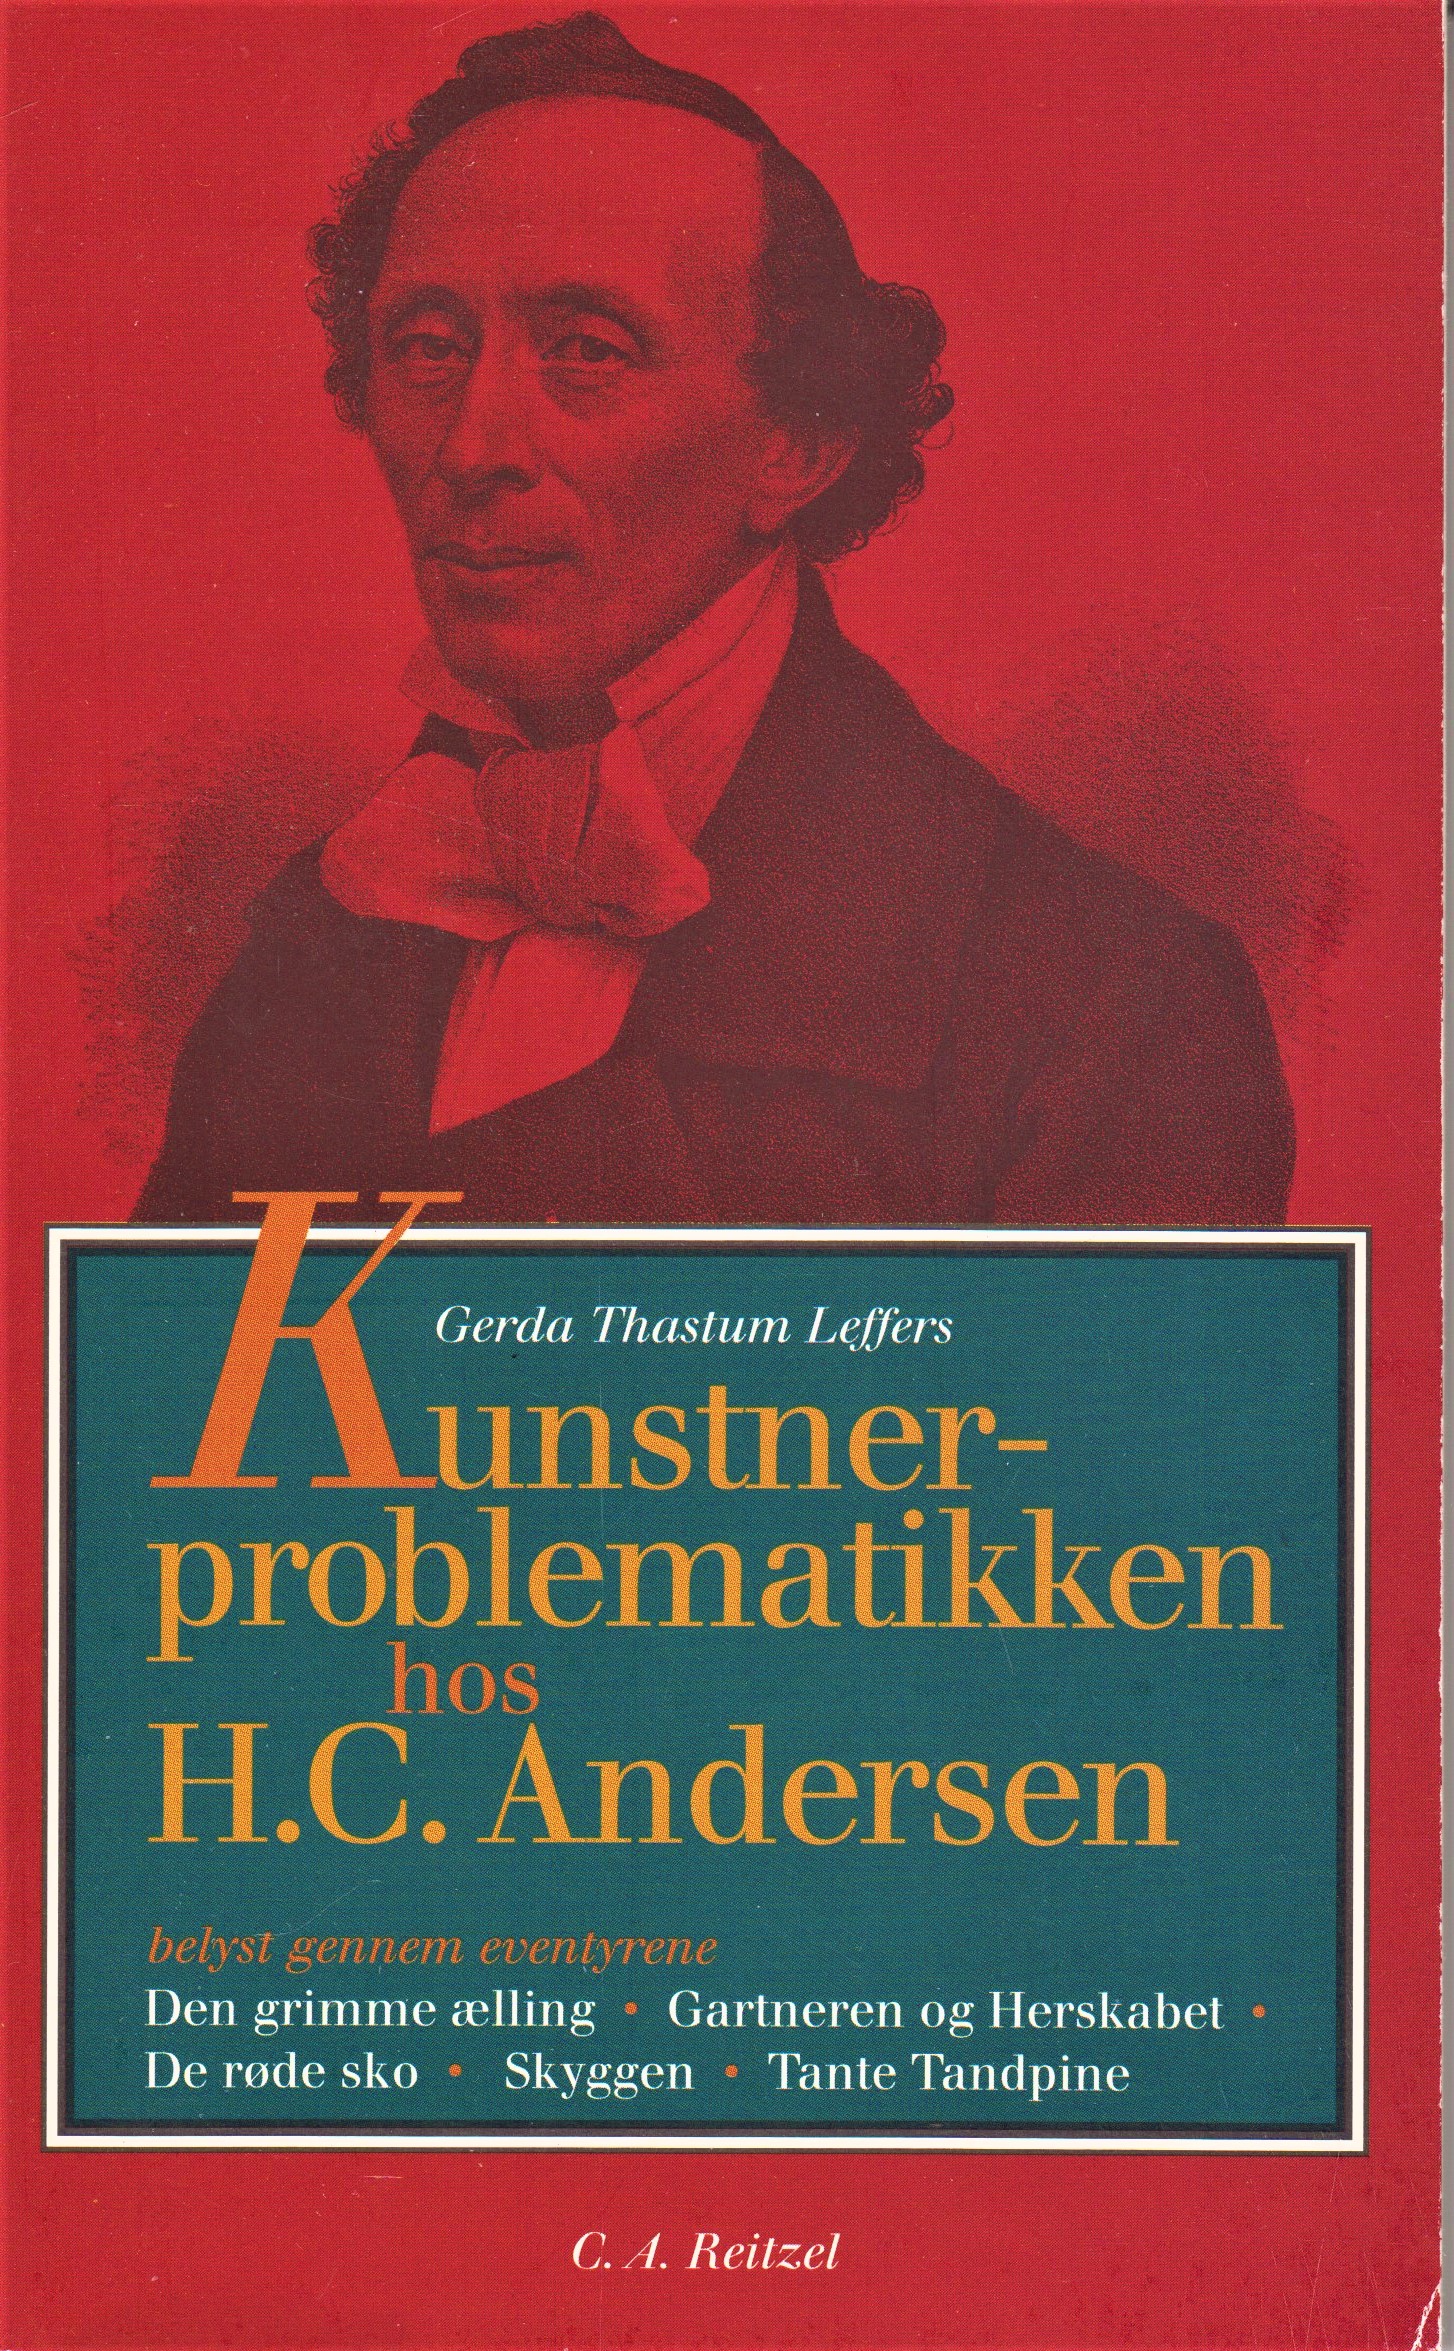 tempo Dalset Kirurgi Få Kunstnerproblematikken hos H.C. Andersen af Andersen, H.C. - Leffers,  Gerda Thastum | Bøger & Kuriosa